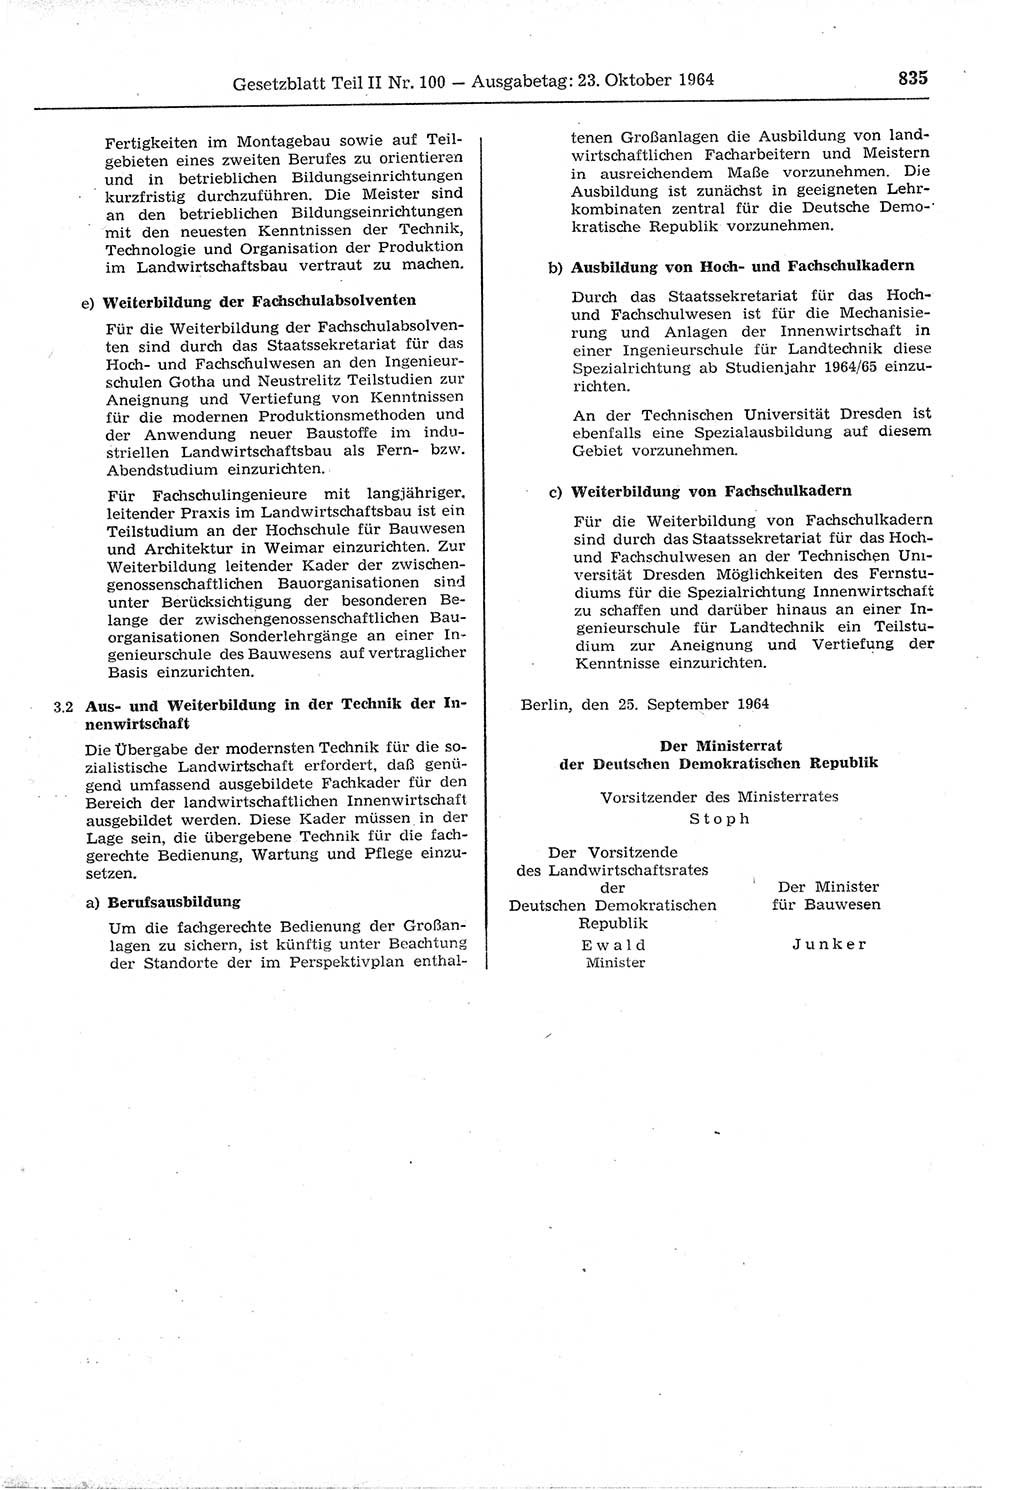 Gesetzblatt (GBl.) der Deutschen Demokratischen Republik (DDR) Teil ⅠⅠ 1964, Seite 835 (GBl. DDR ⅠⅠ 1964, S. 835)